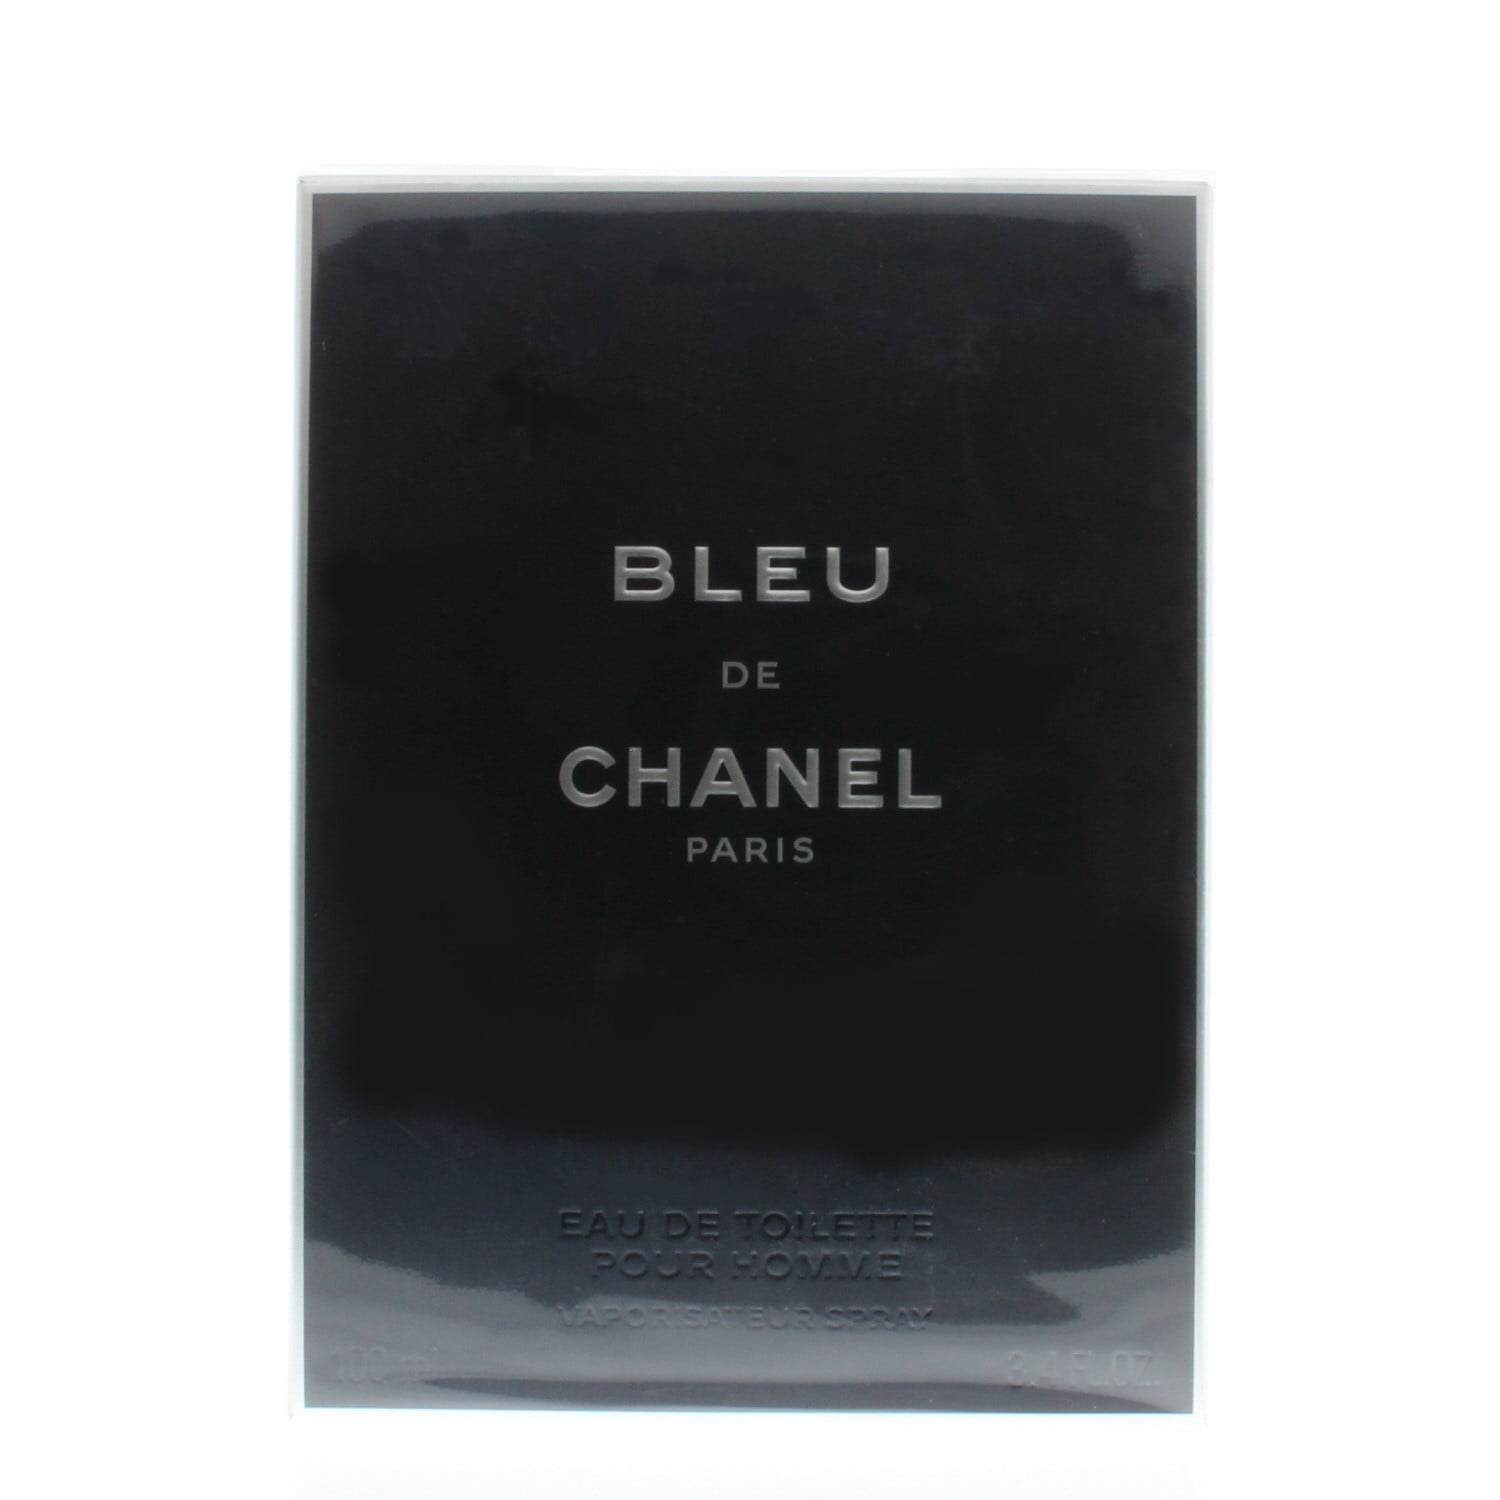 Chanel Bleu De Chanel Eau de Parfum, Cologne for Men, 1.7 Oz - Walmart.com